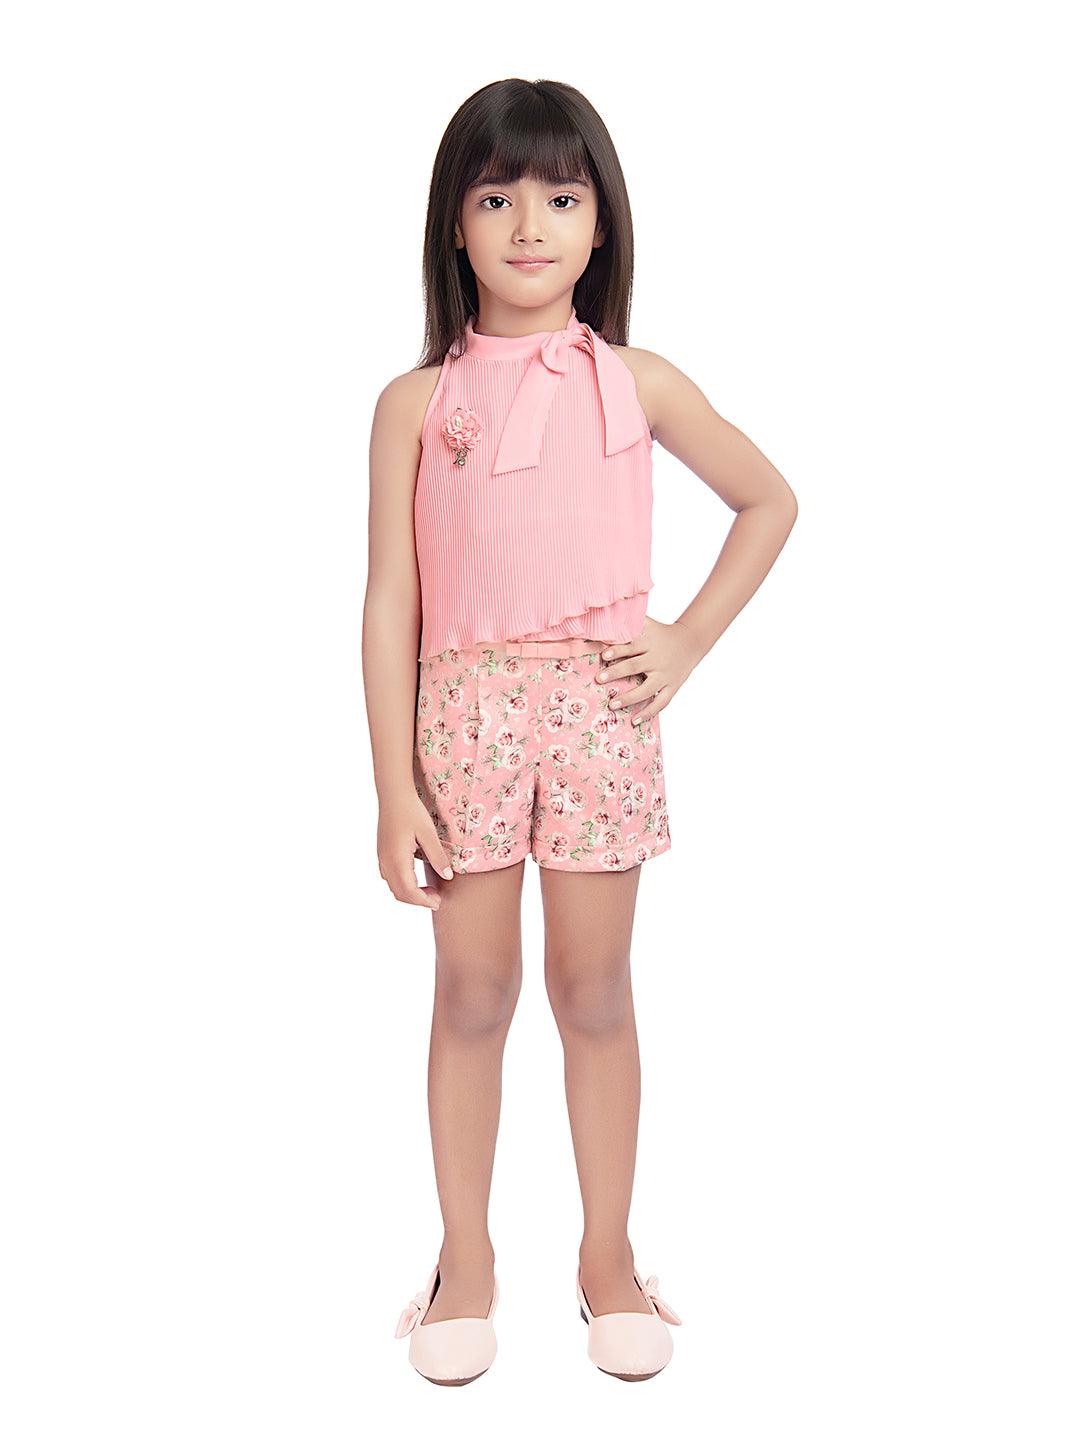 Tiny Baby Peach Coloured Shorts Set - 2100 Peach - TINY BABY INDIA shop.tinybaby.in